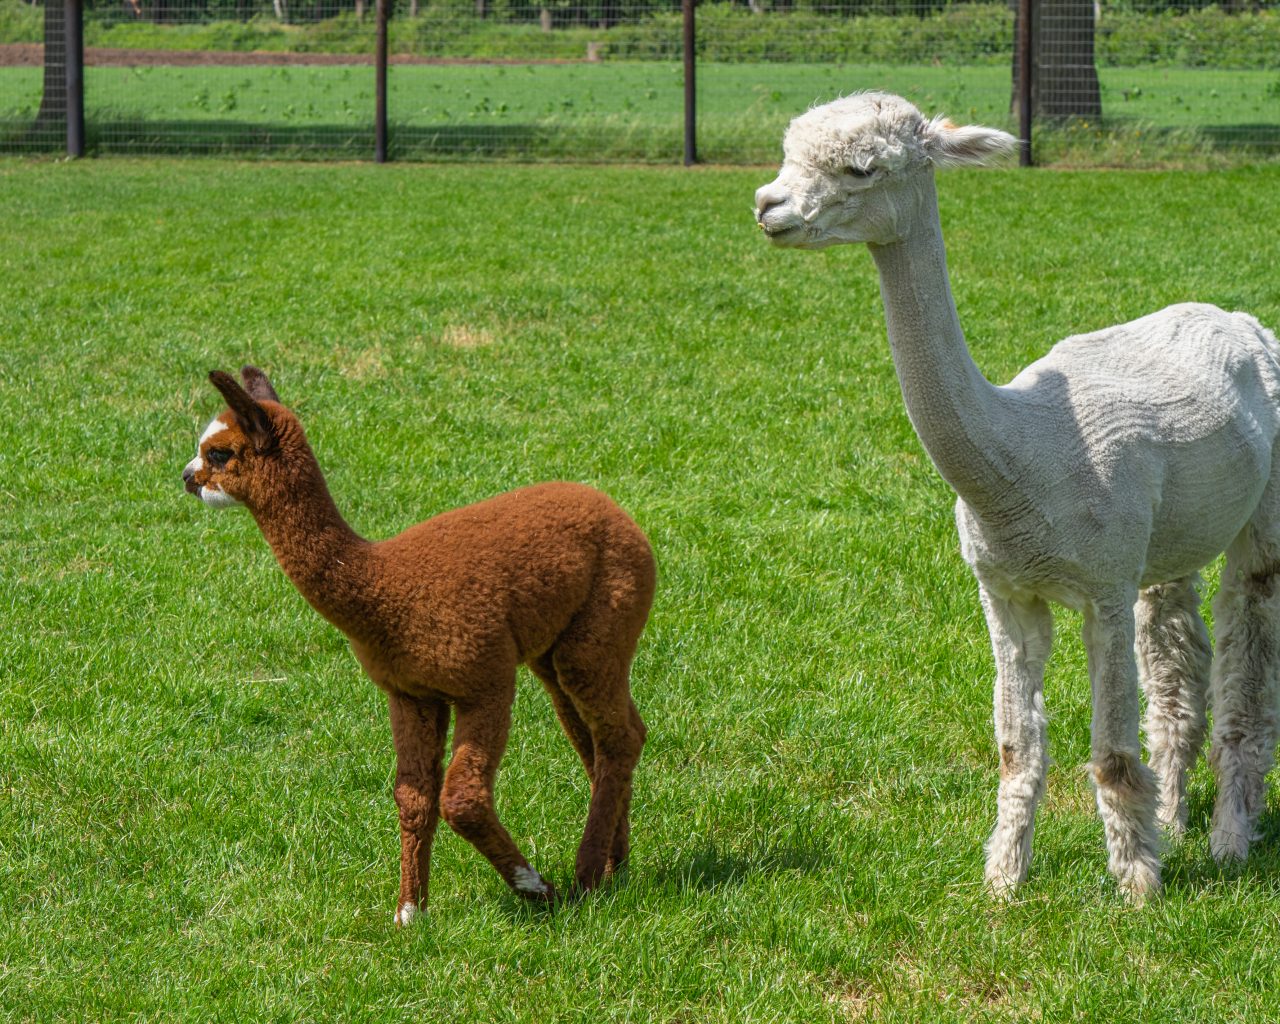 Witte-alpaca-met-bruine-baby-alpaca-in-wei